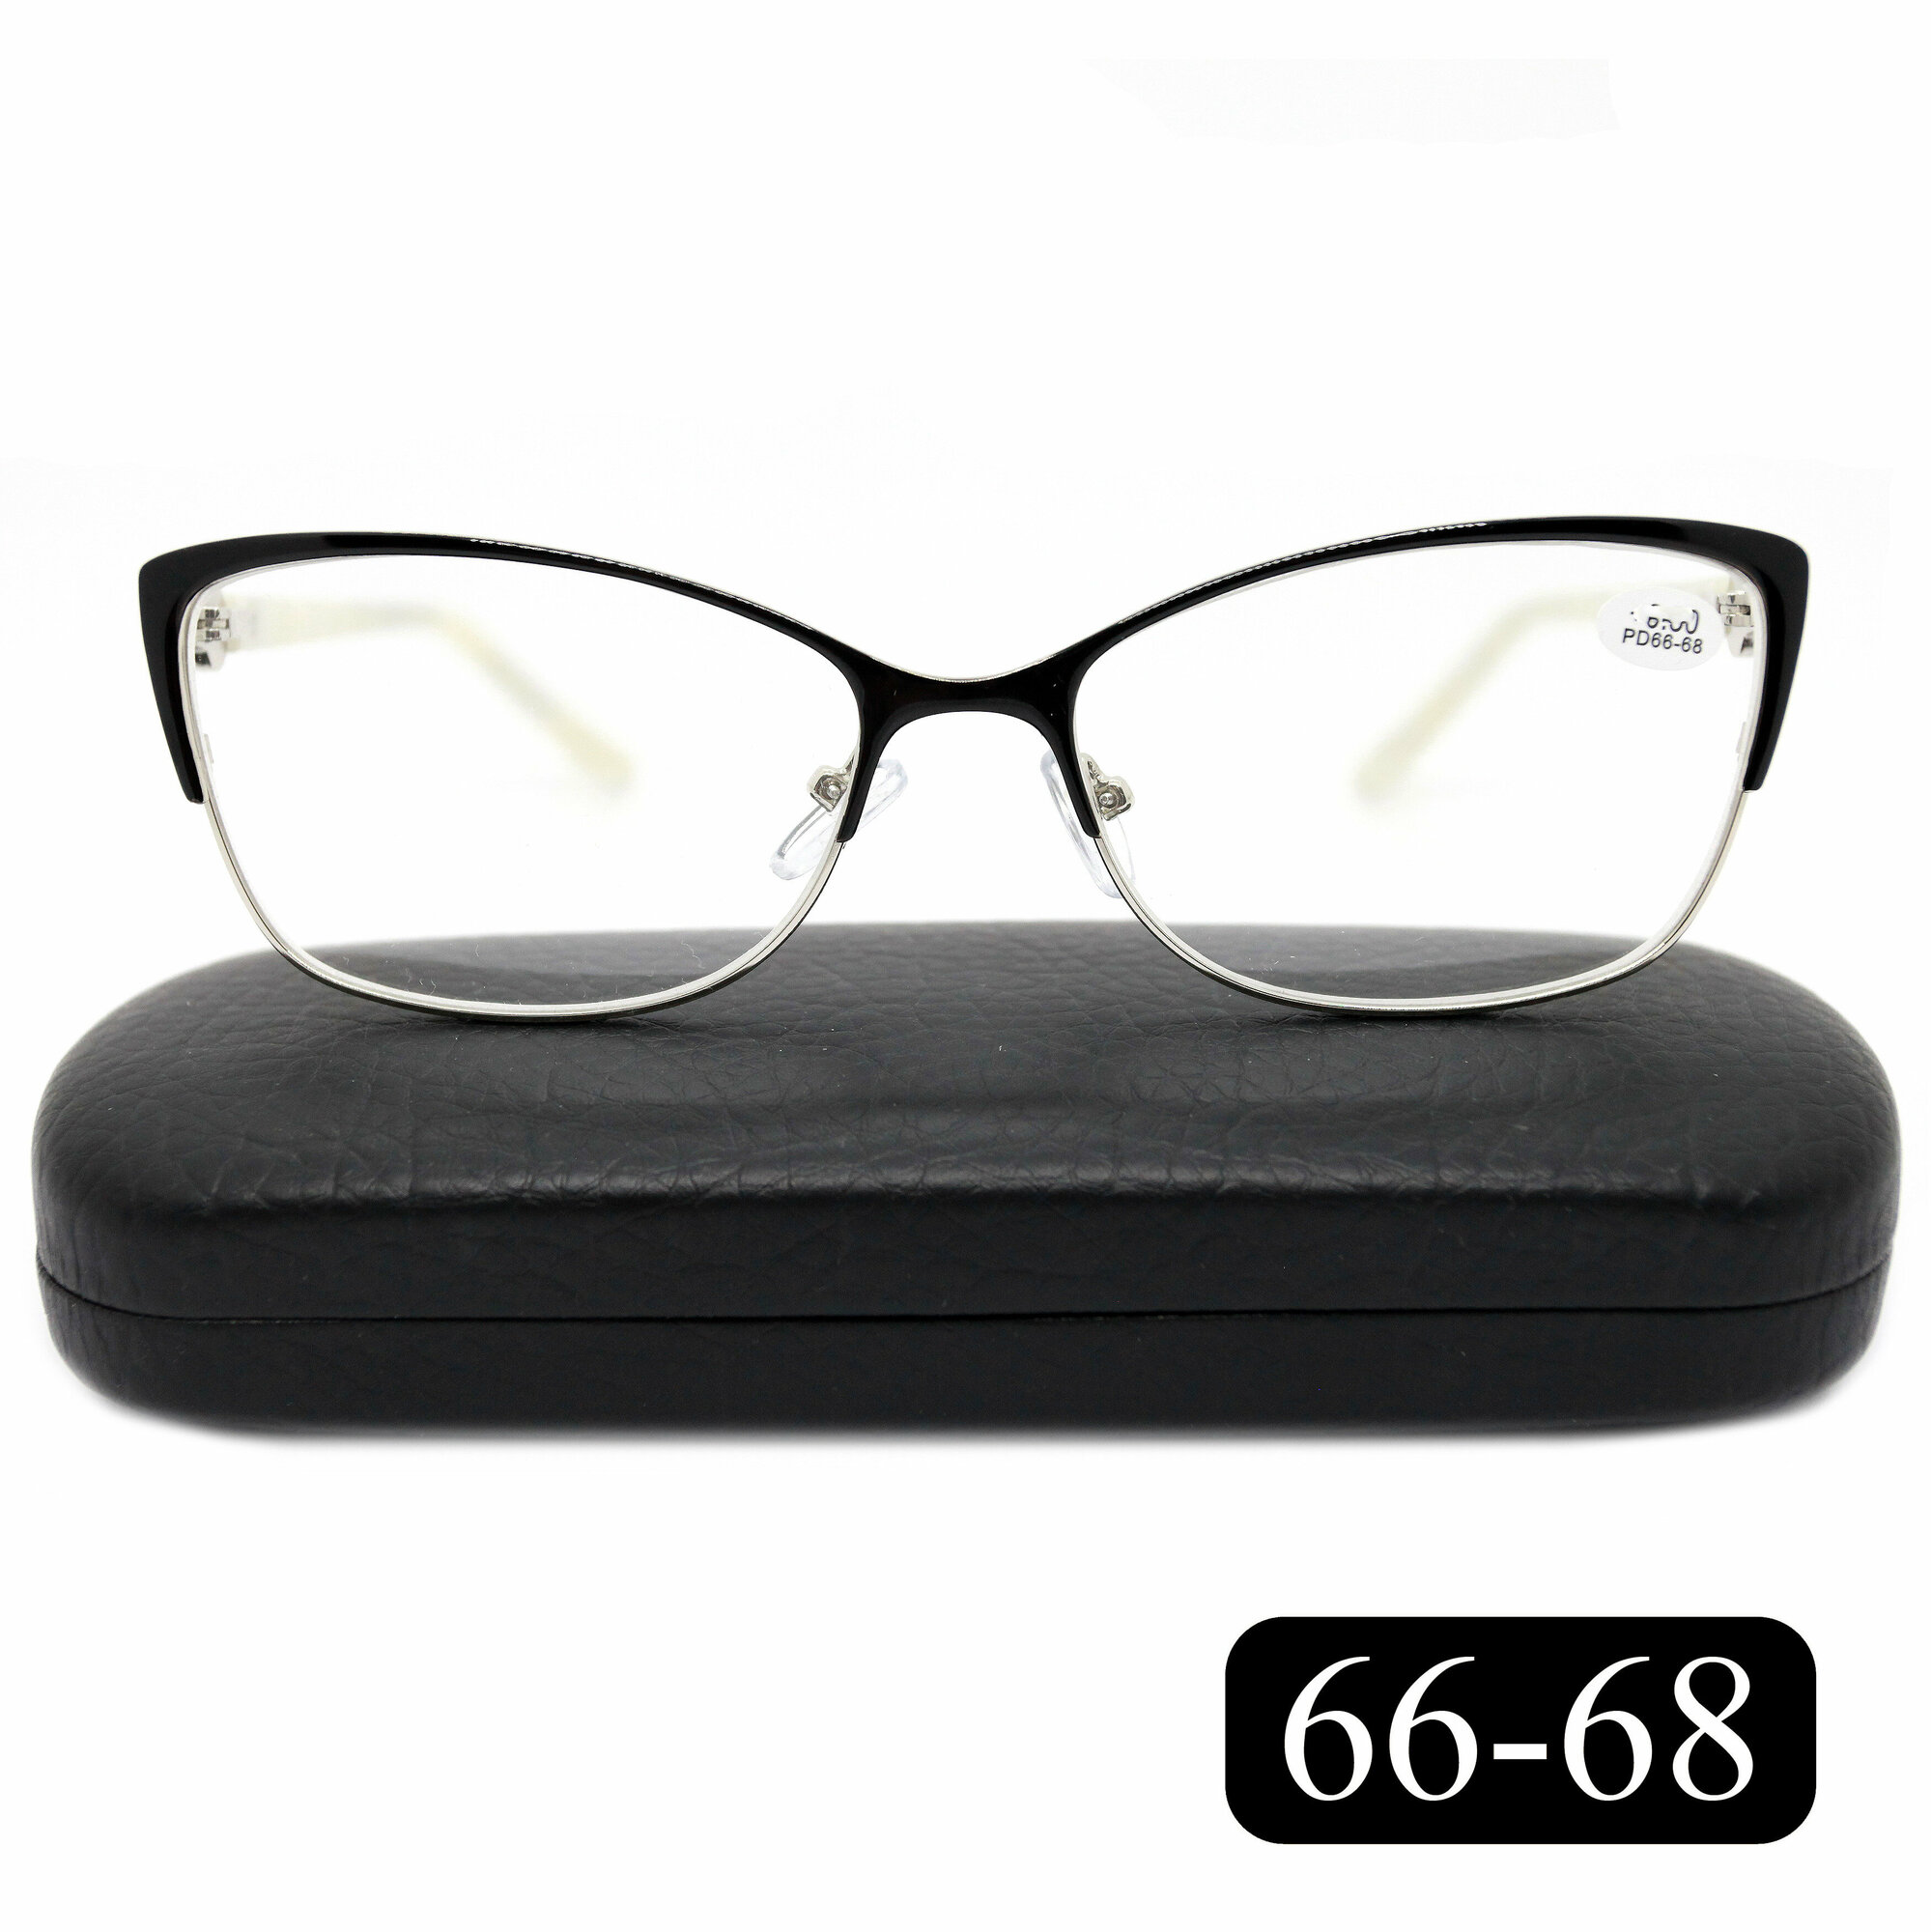 Женские очки 66-68 с диоптриями для чтения (+1.75) Glodiatr 2032 C1, цвет черно-бежевый, с футляром, РЦ 66-68